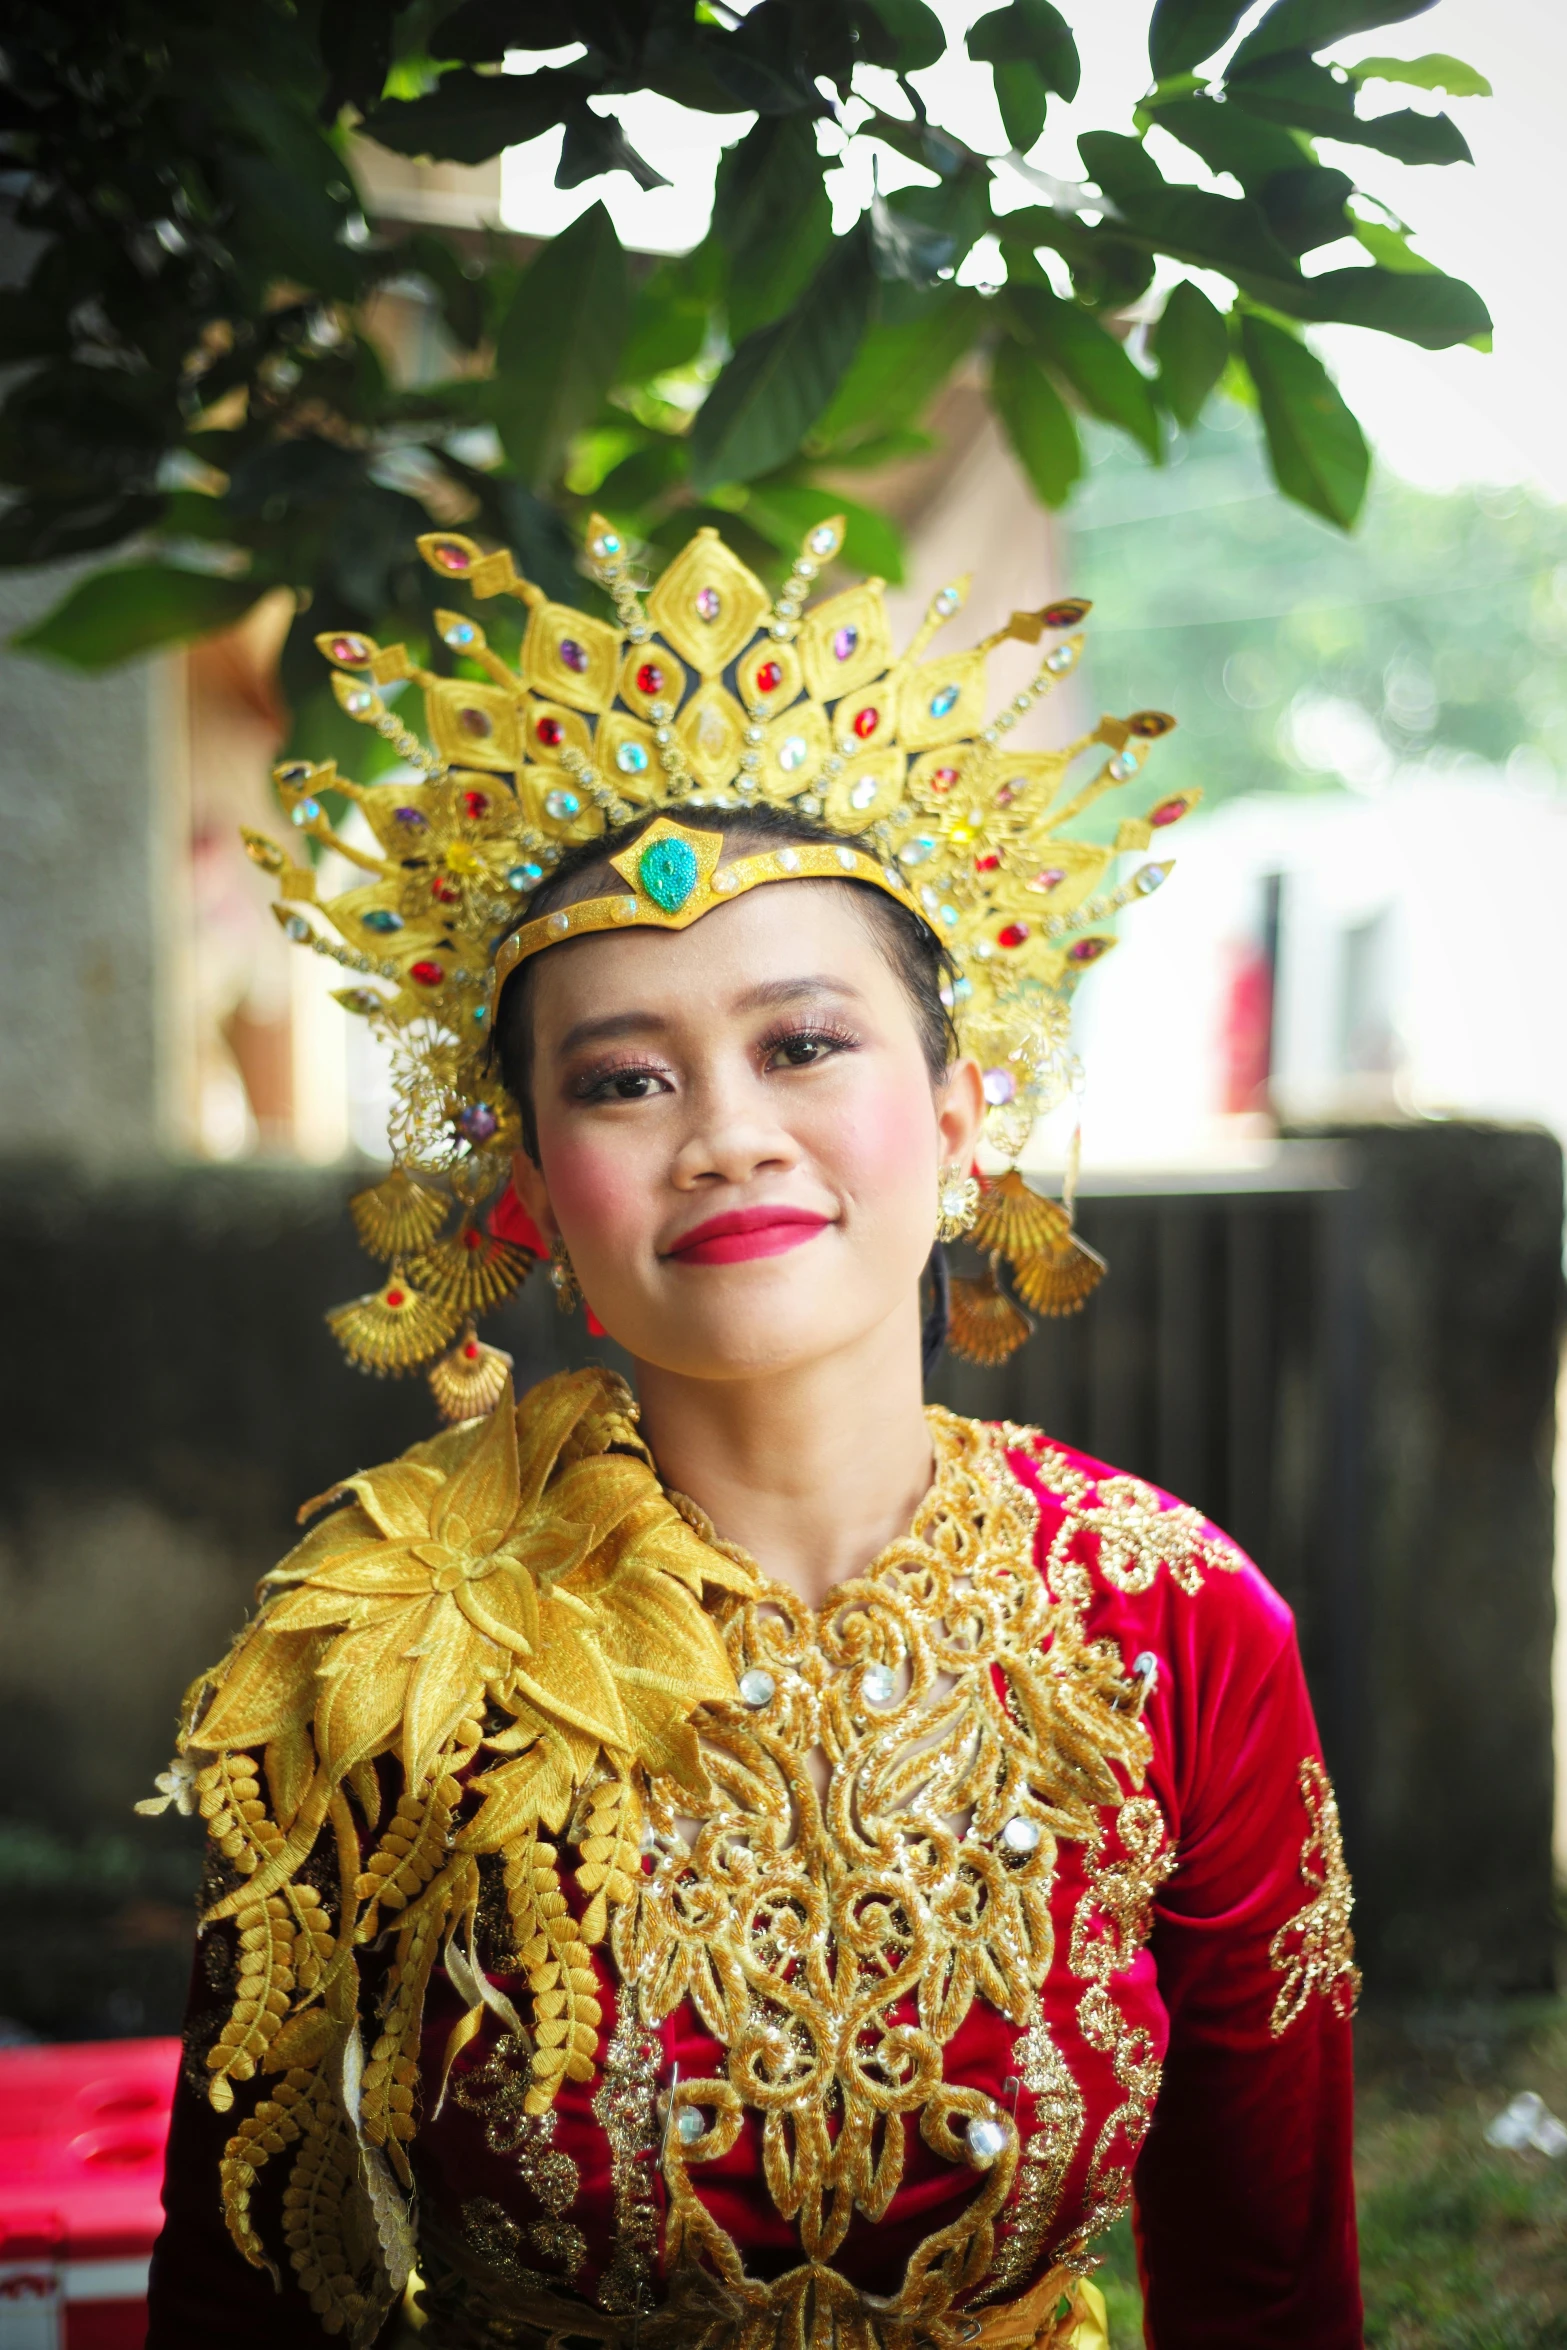 a woman wearing an elaborate golden head dress